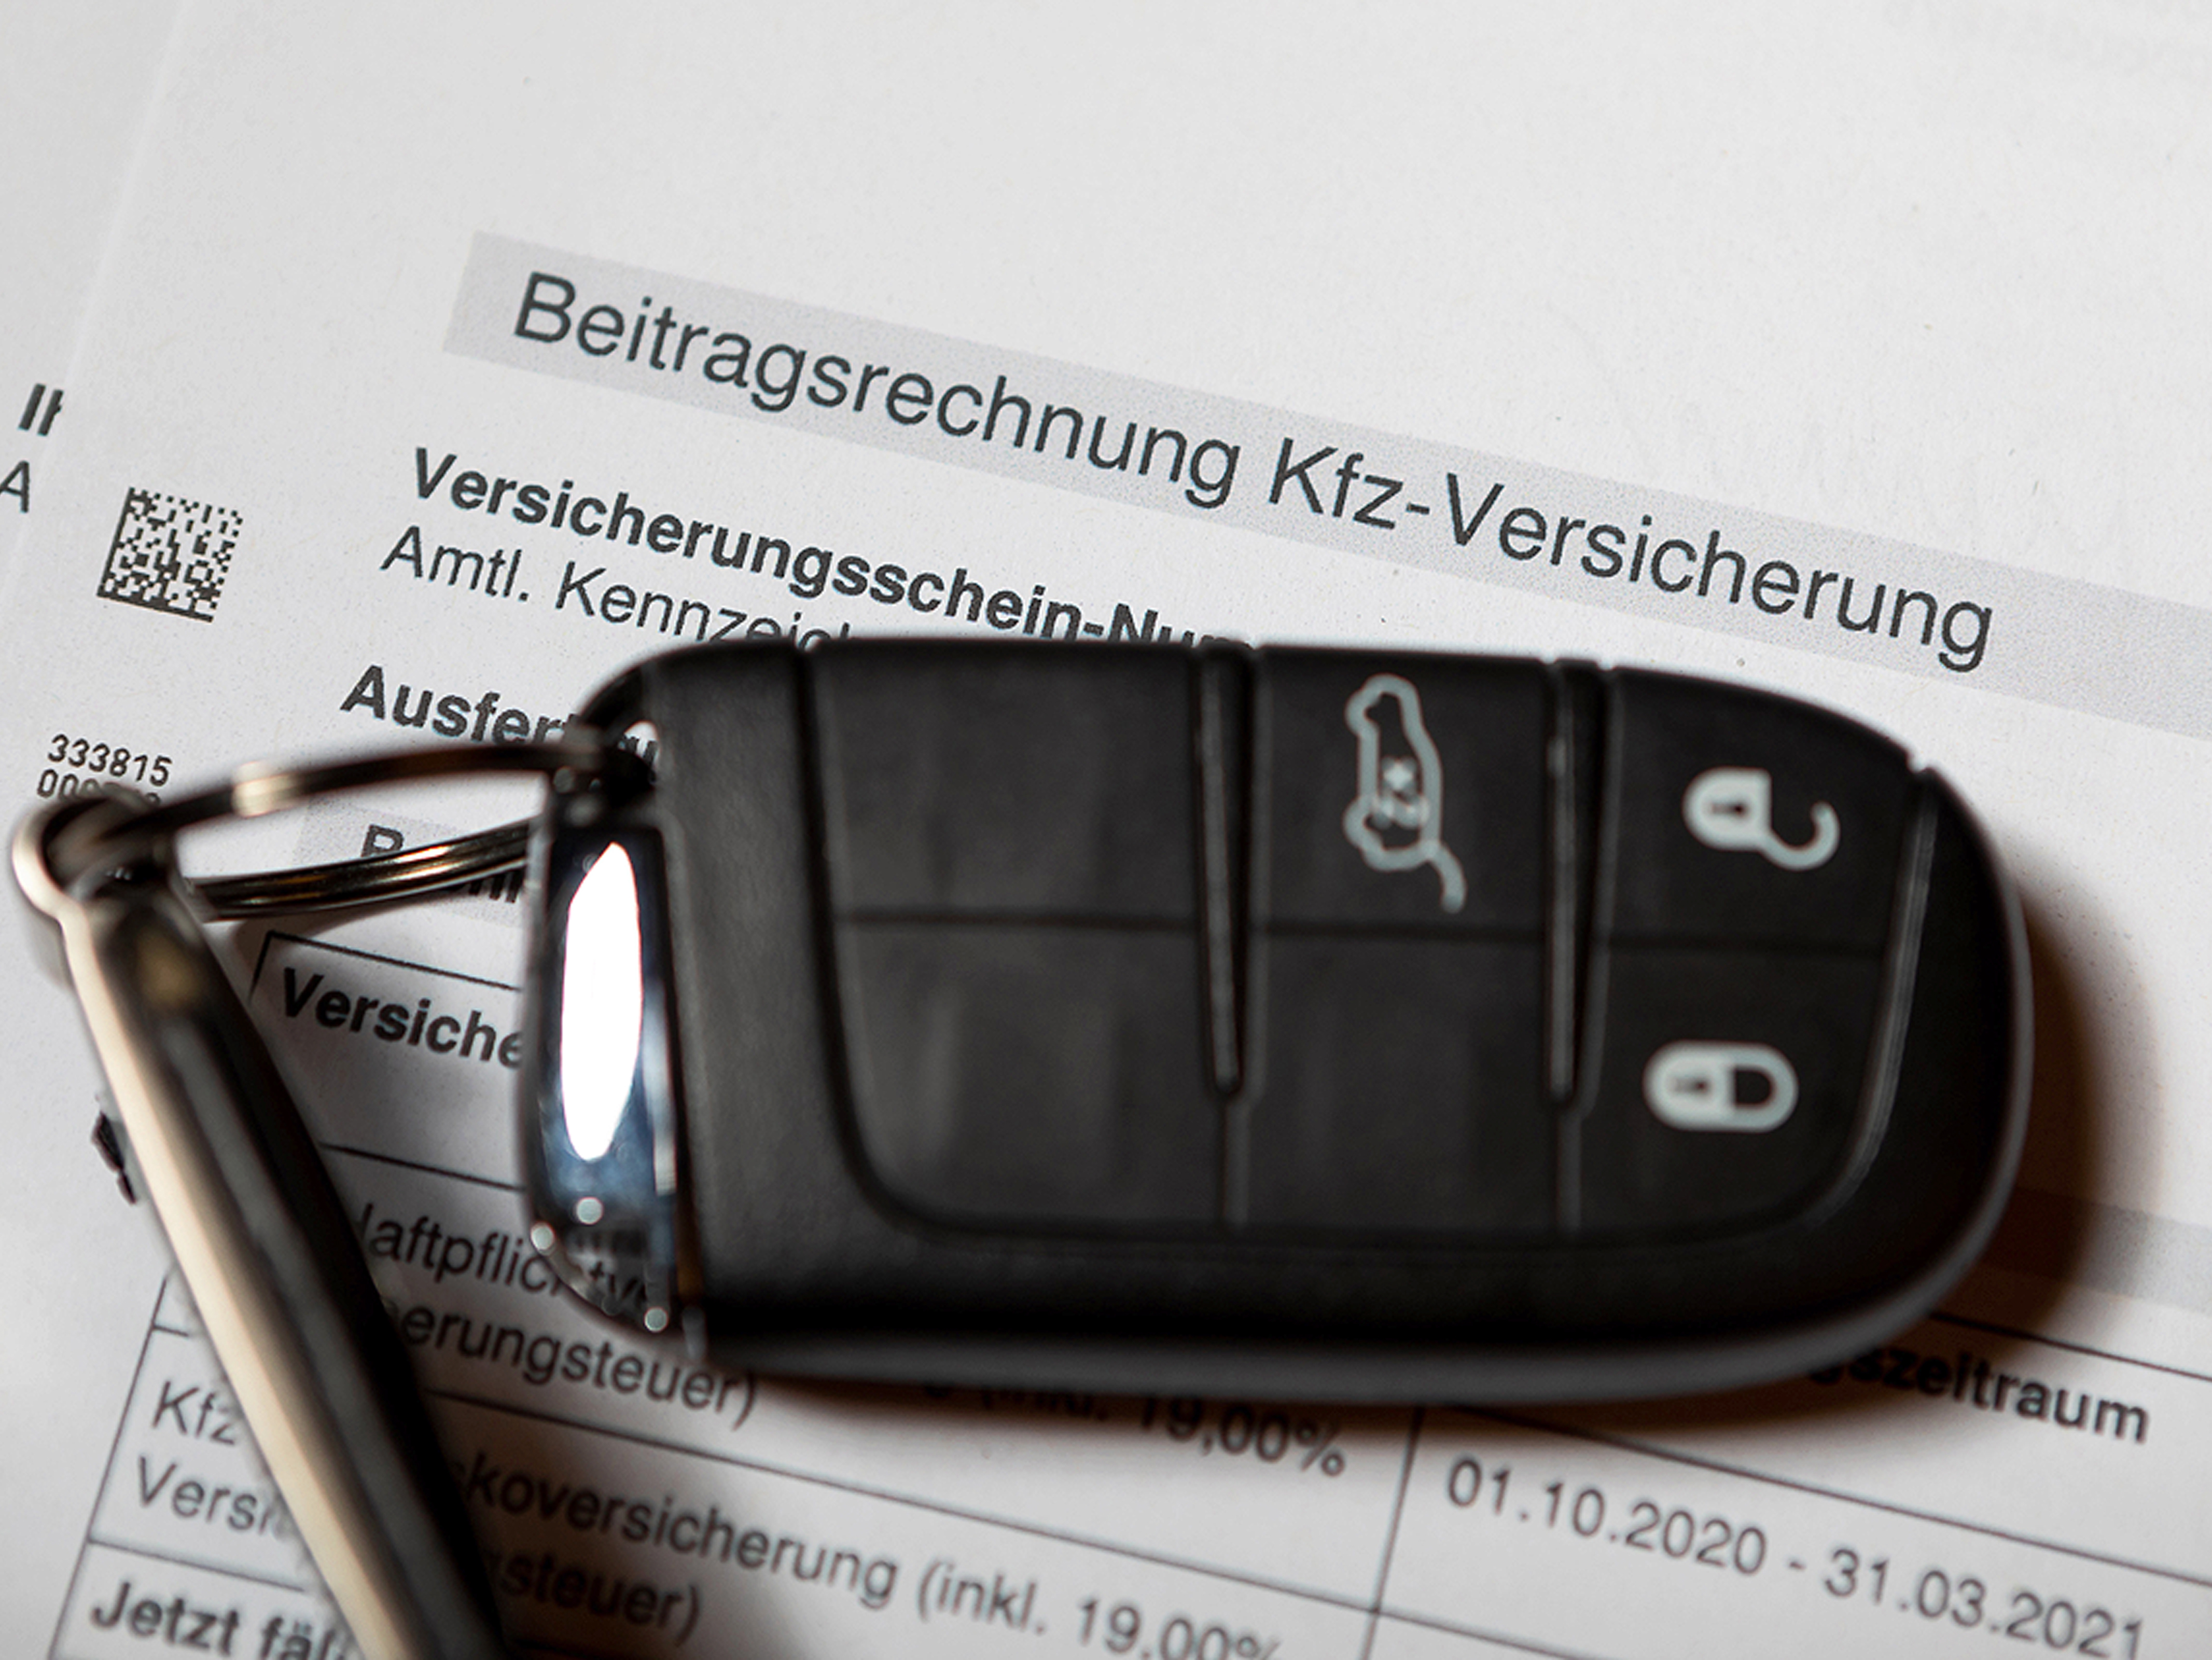 Kfz-Versicherung: Sonderkündigungsrecht nutzen - AUTO BILD